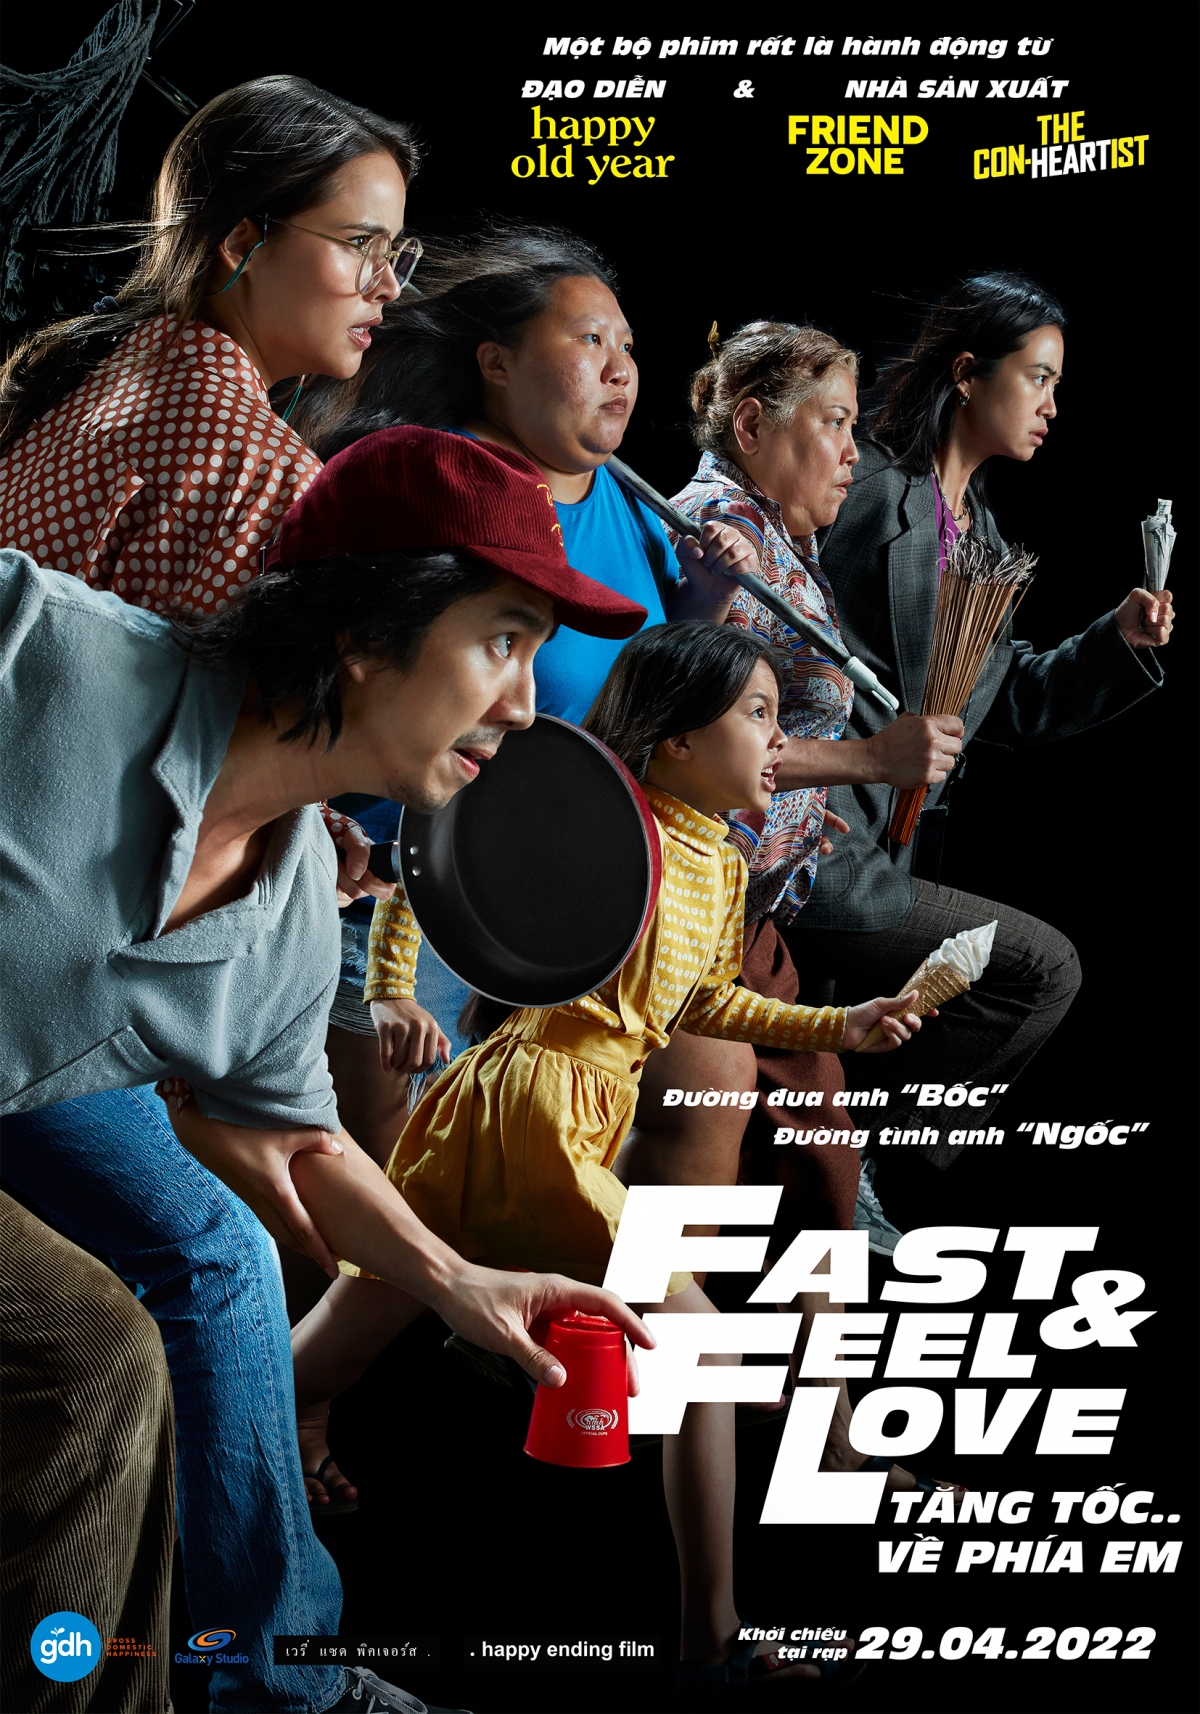 phim fast and feel love - tinh yeu khong co loi, loi o ban than hinh anh 3